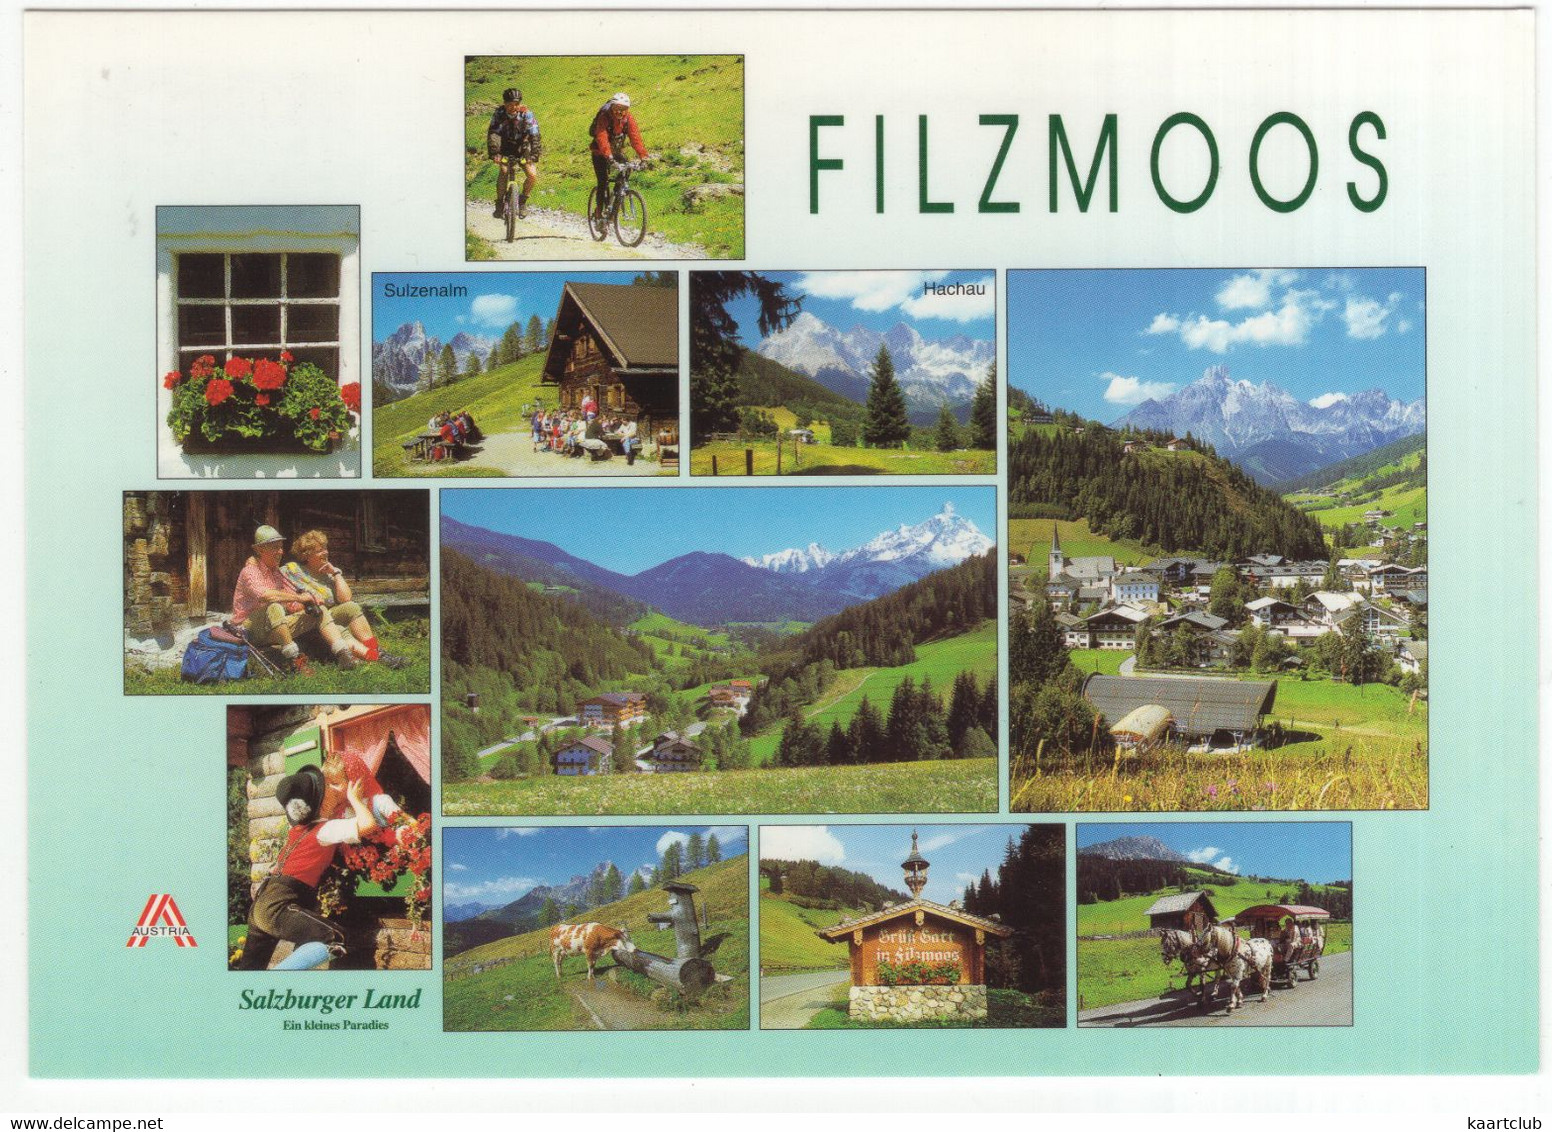 Filzmoos - Beliebte Urlaubsort Am Fuße Der Bischofsmütze - (Land Salzburg, Österreich/Austria) - Filzmoos